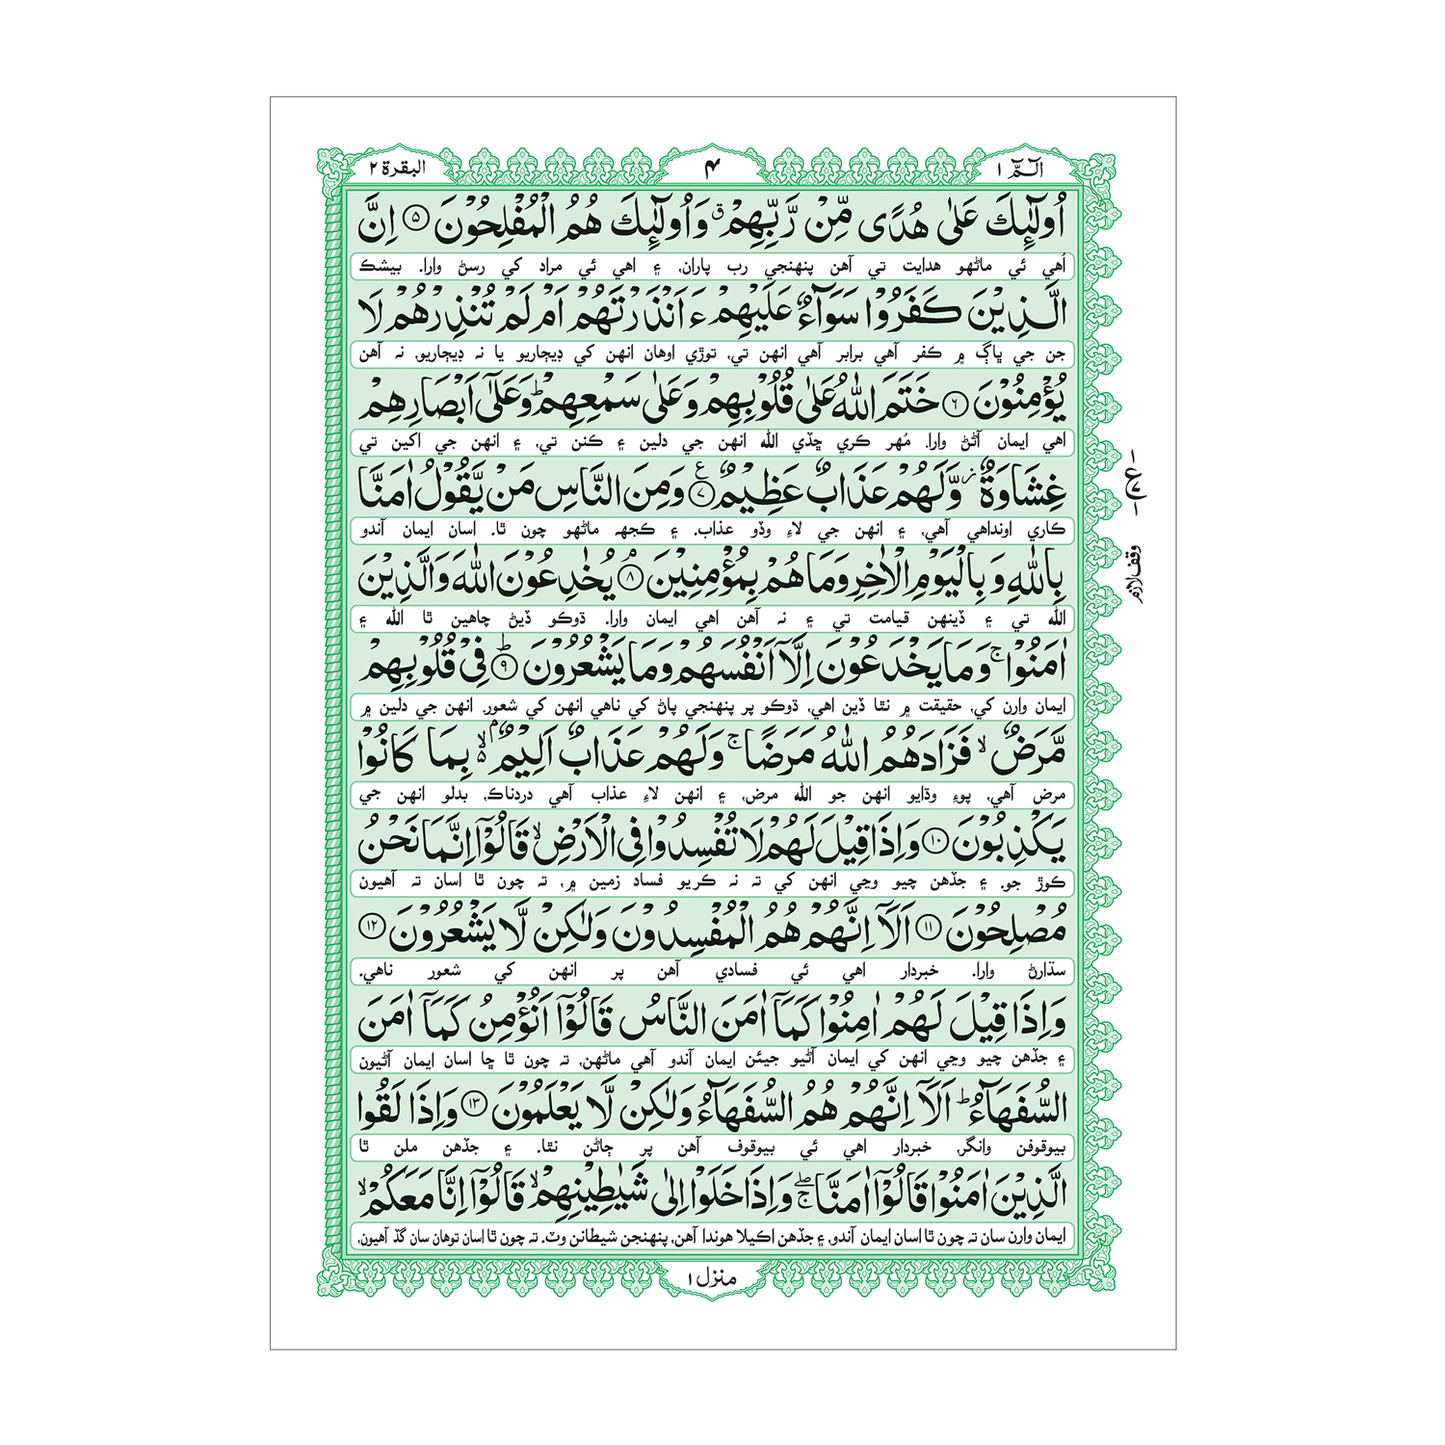 [86/SG] Al-Quran-Ul-Kareem With Kanzul Iman (Sindhi Translation - Hazrat Mufti Muhammad Umer Khilji Qadri) - Gift Edition